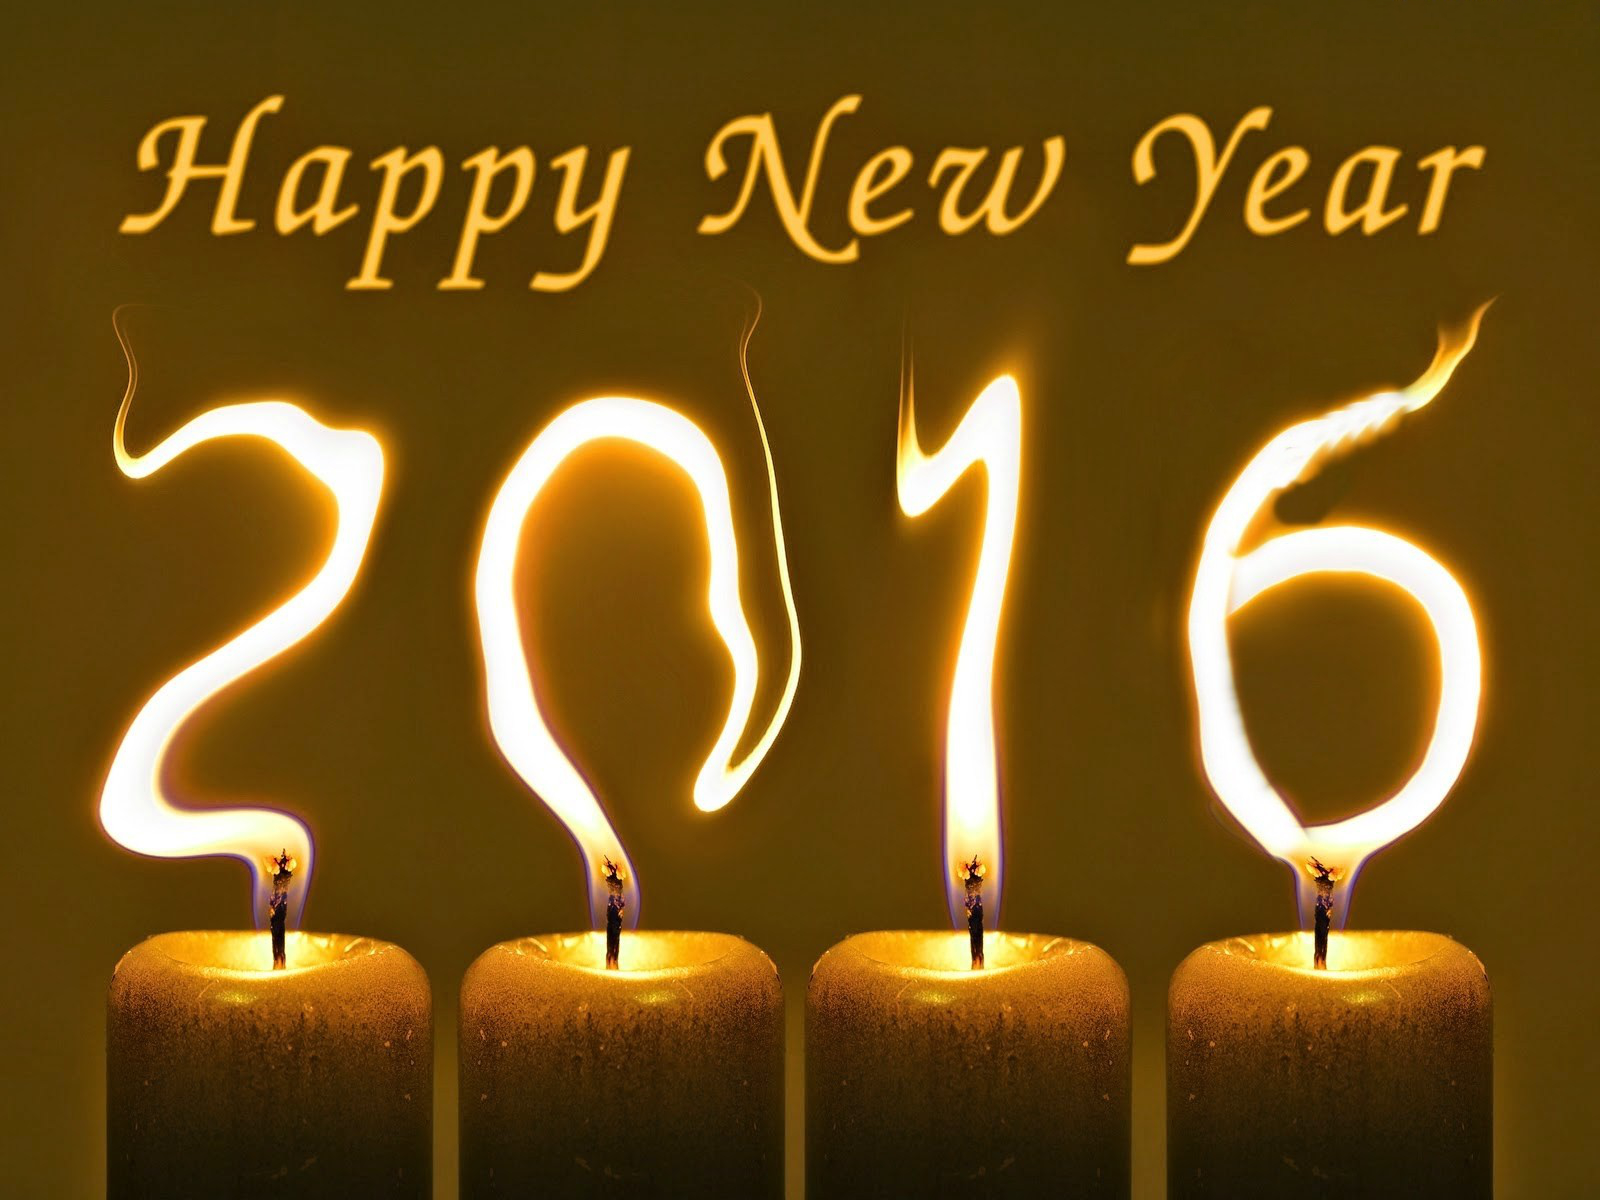 Día festivo Año Nuevo 2016 Fondo de Pantalla